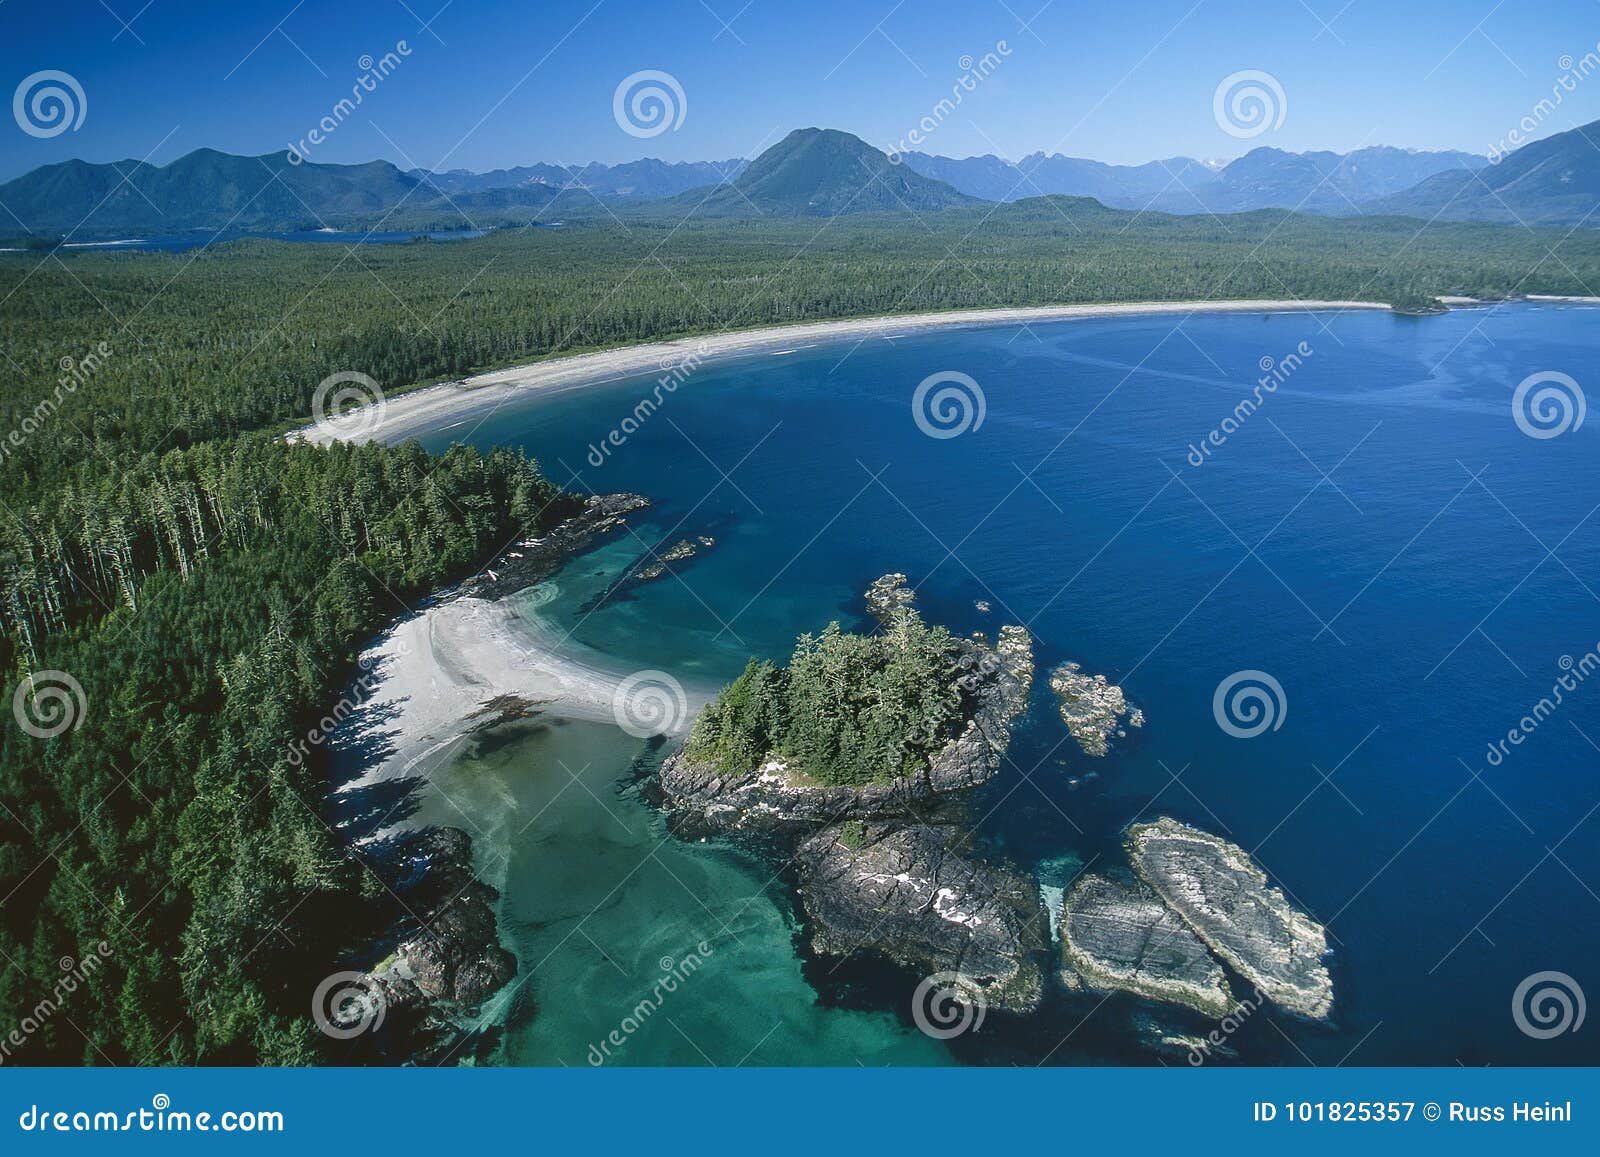 aerial image of vargas island, tofino, bc, canada